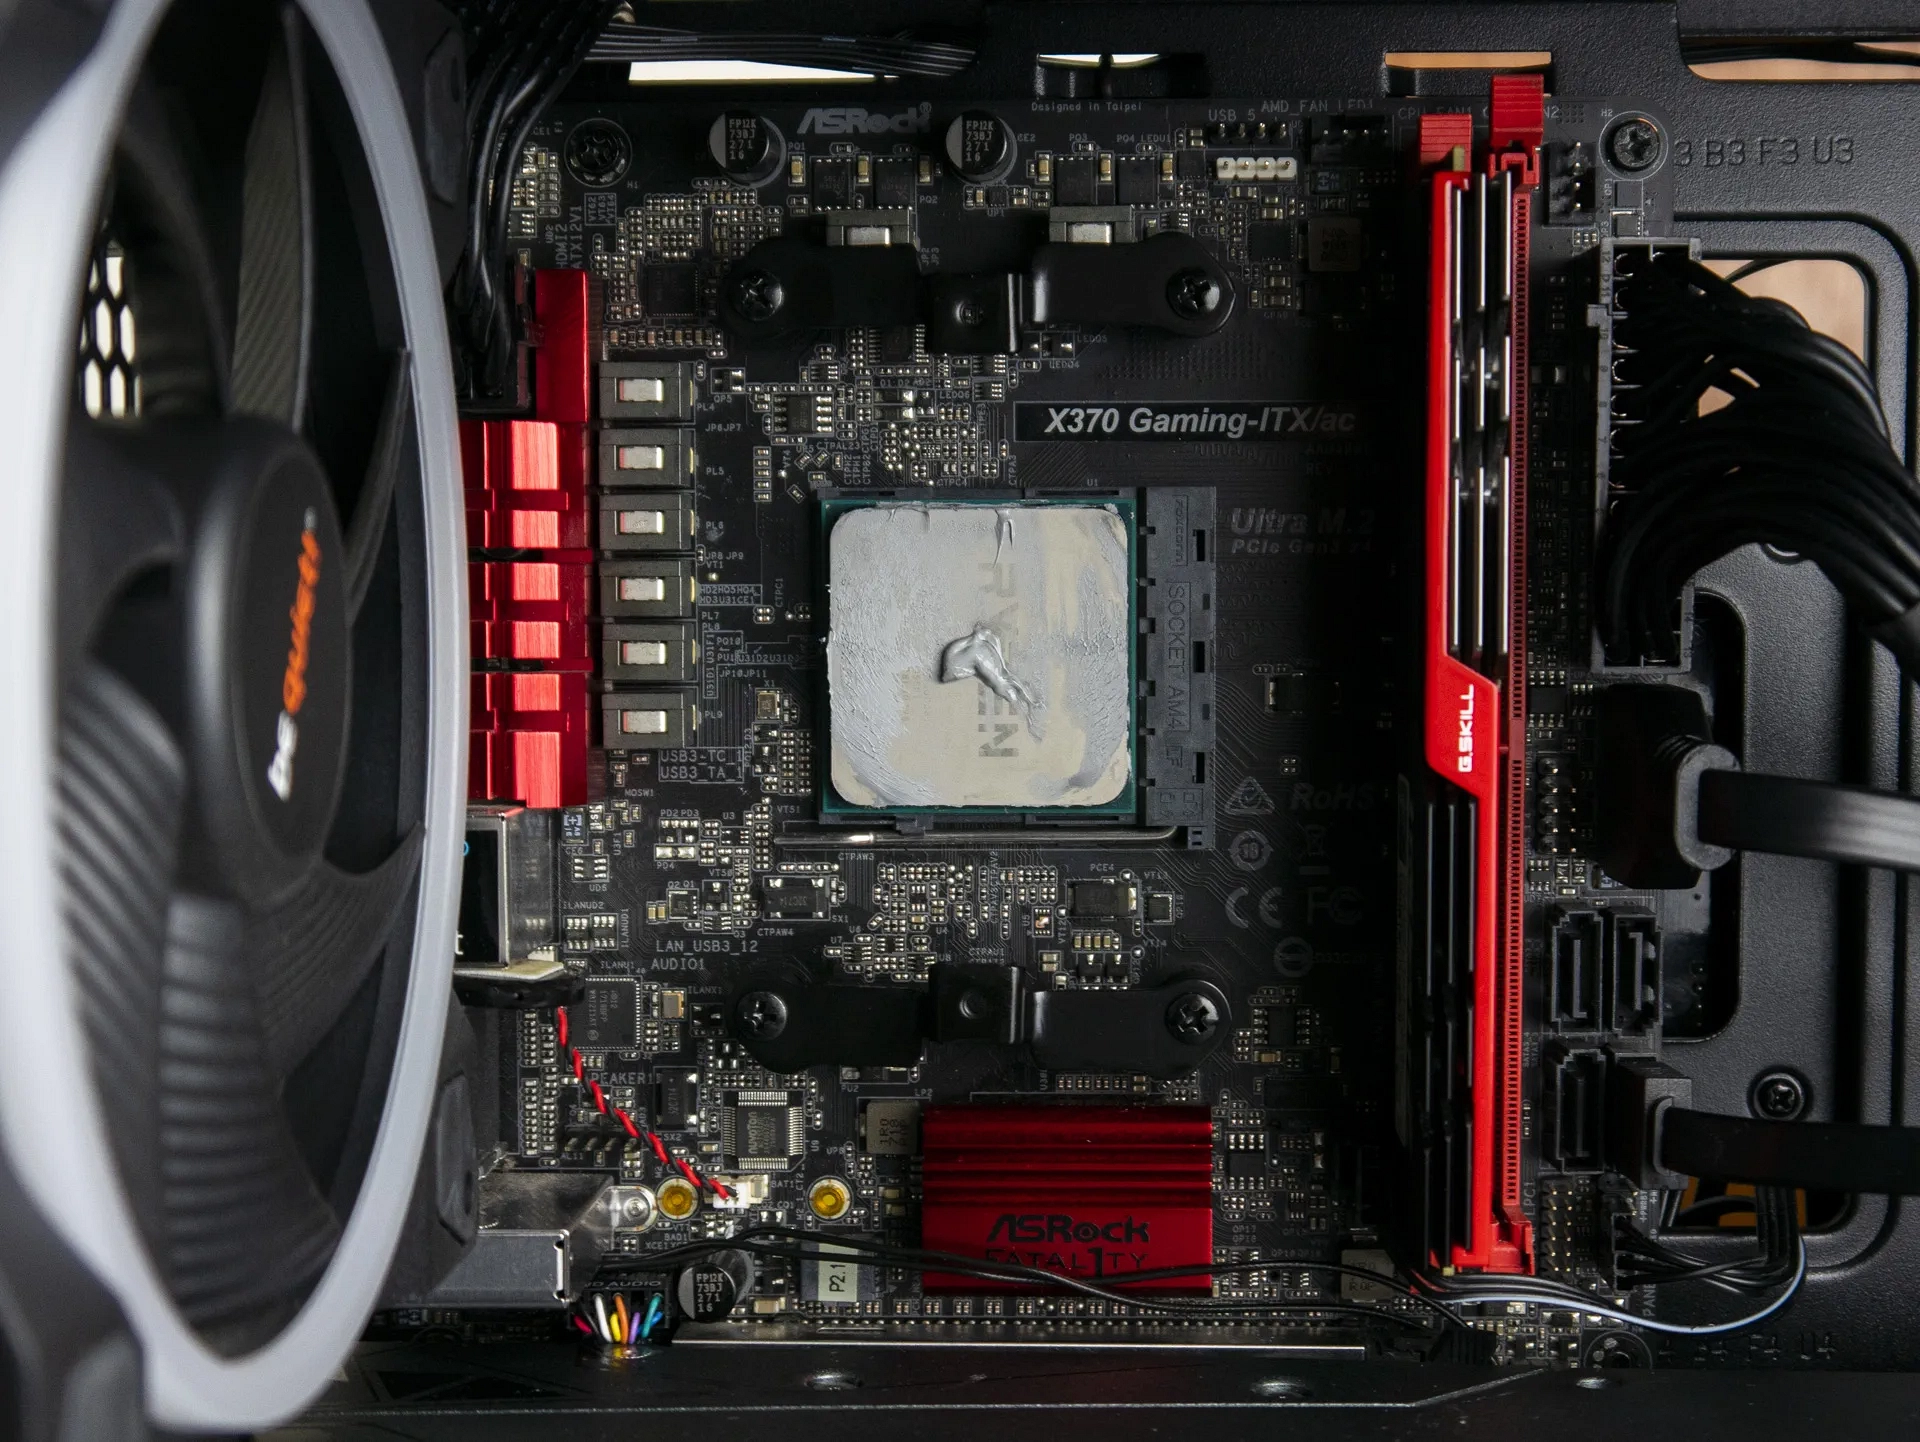 AMD AM4 socket motherboard